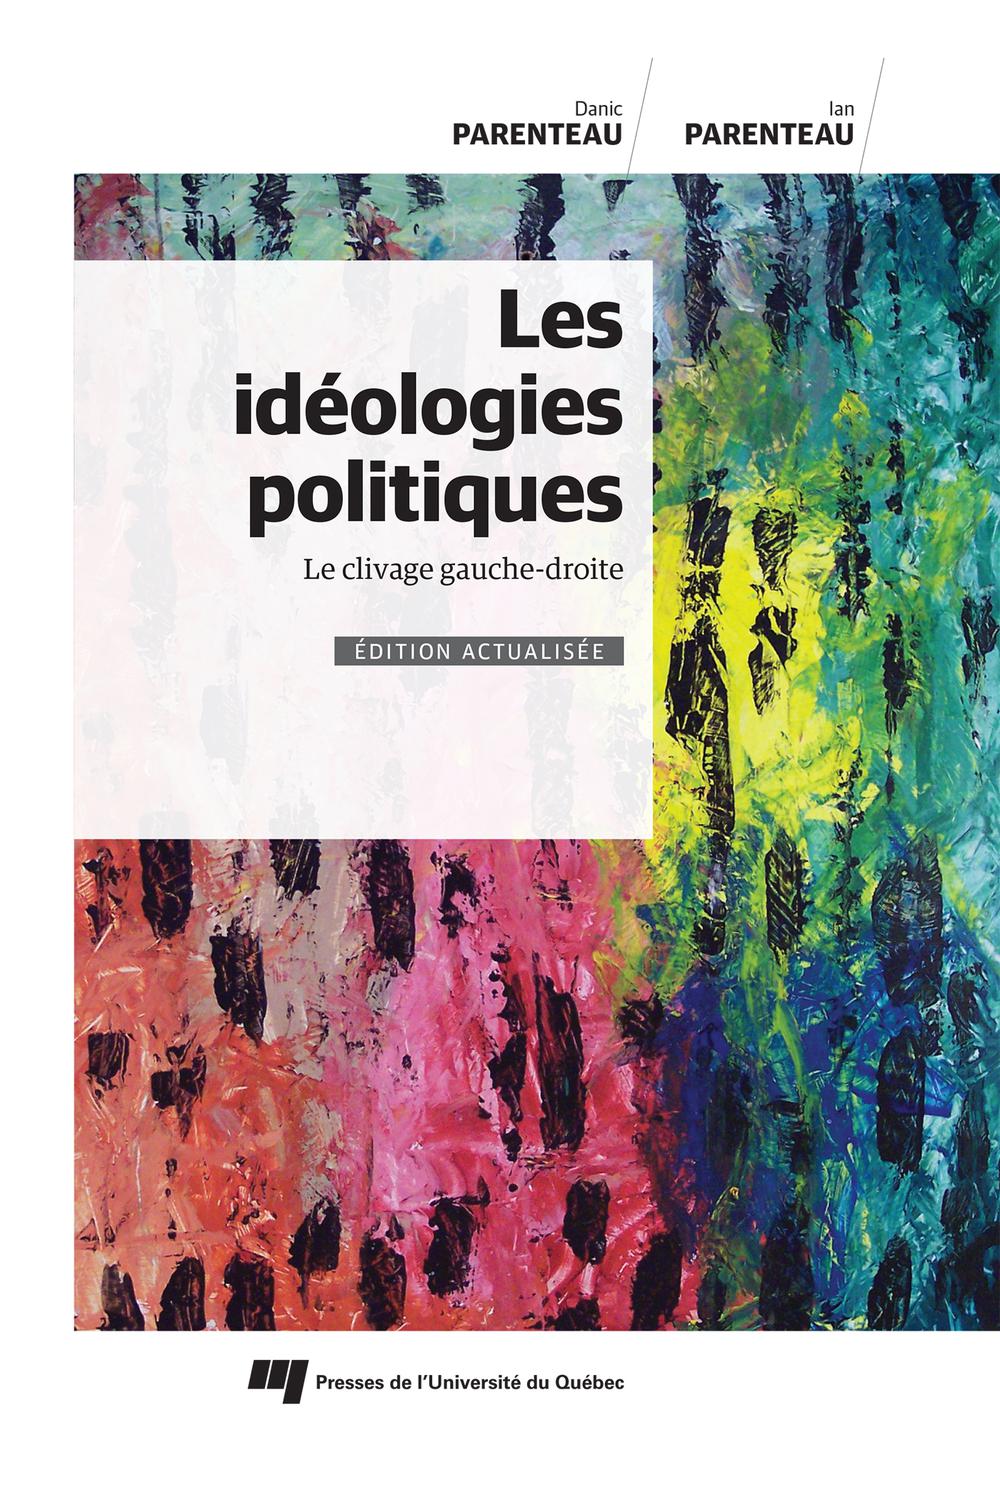 Les idéologies politiques, édition actualisée - Danic Parenteau, Ian Parenteau